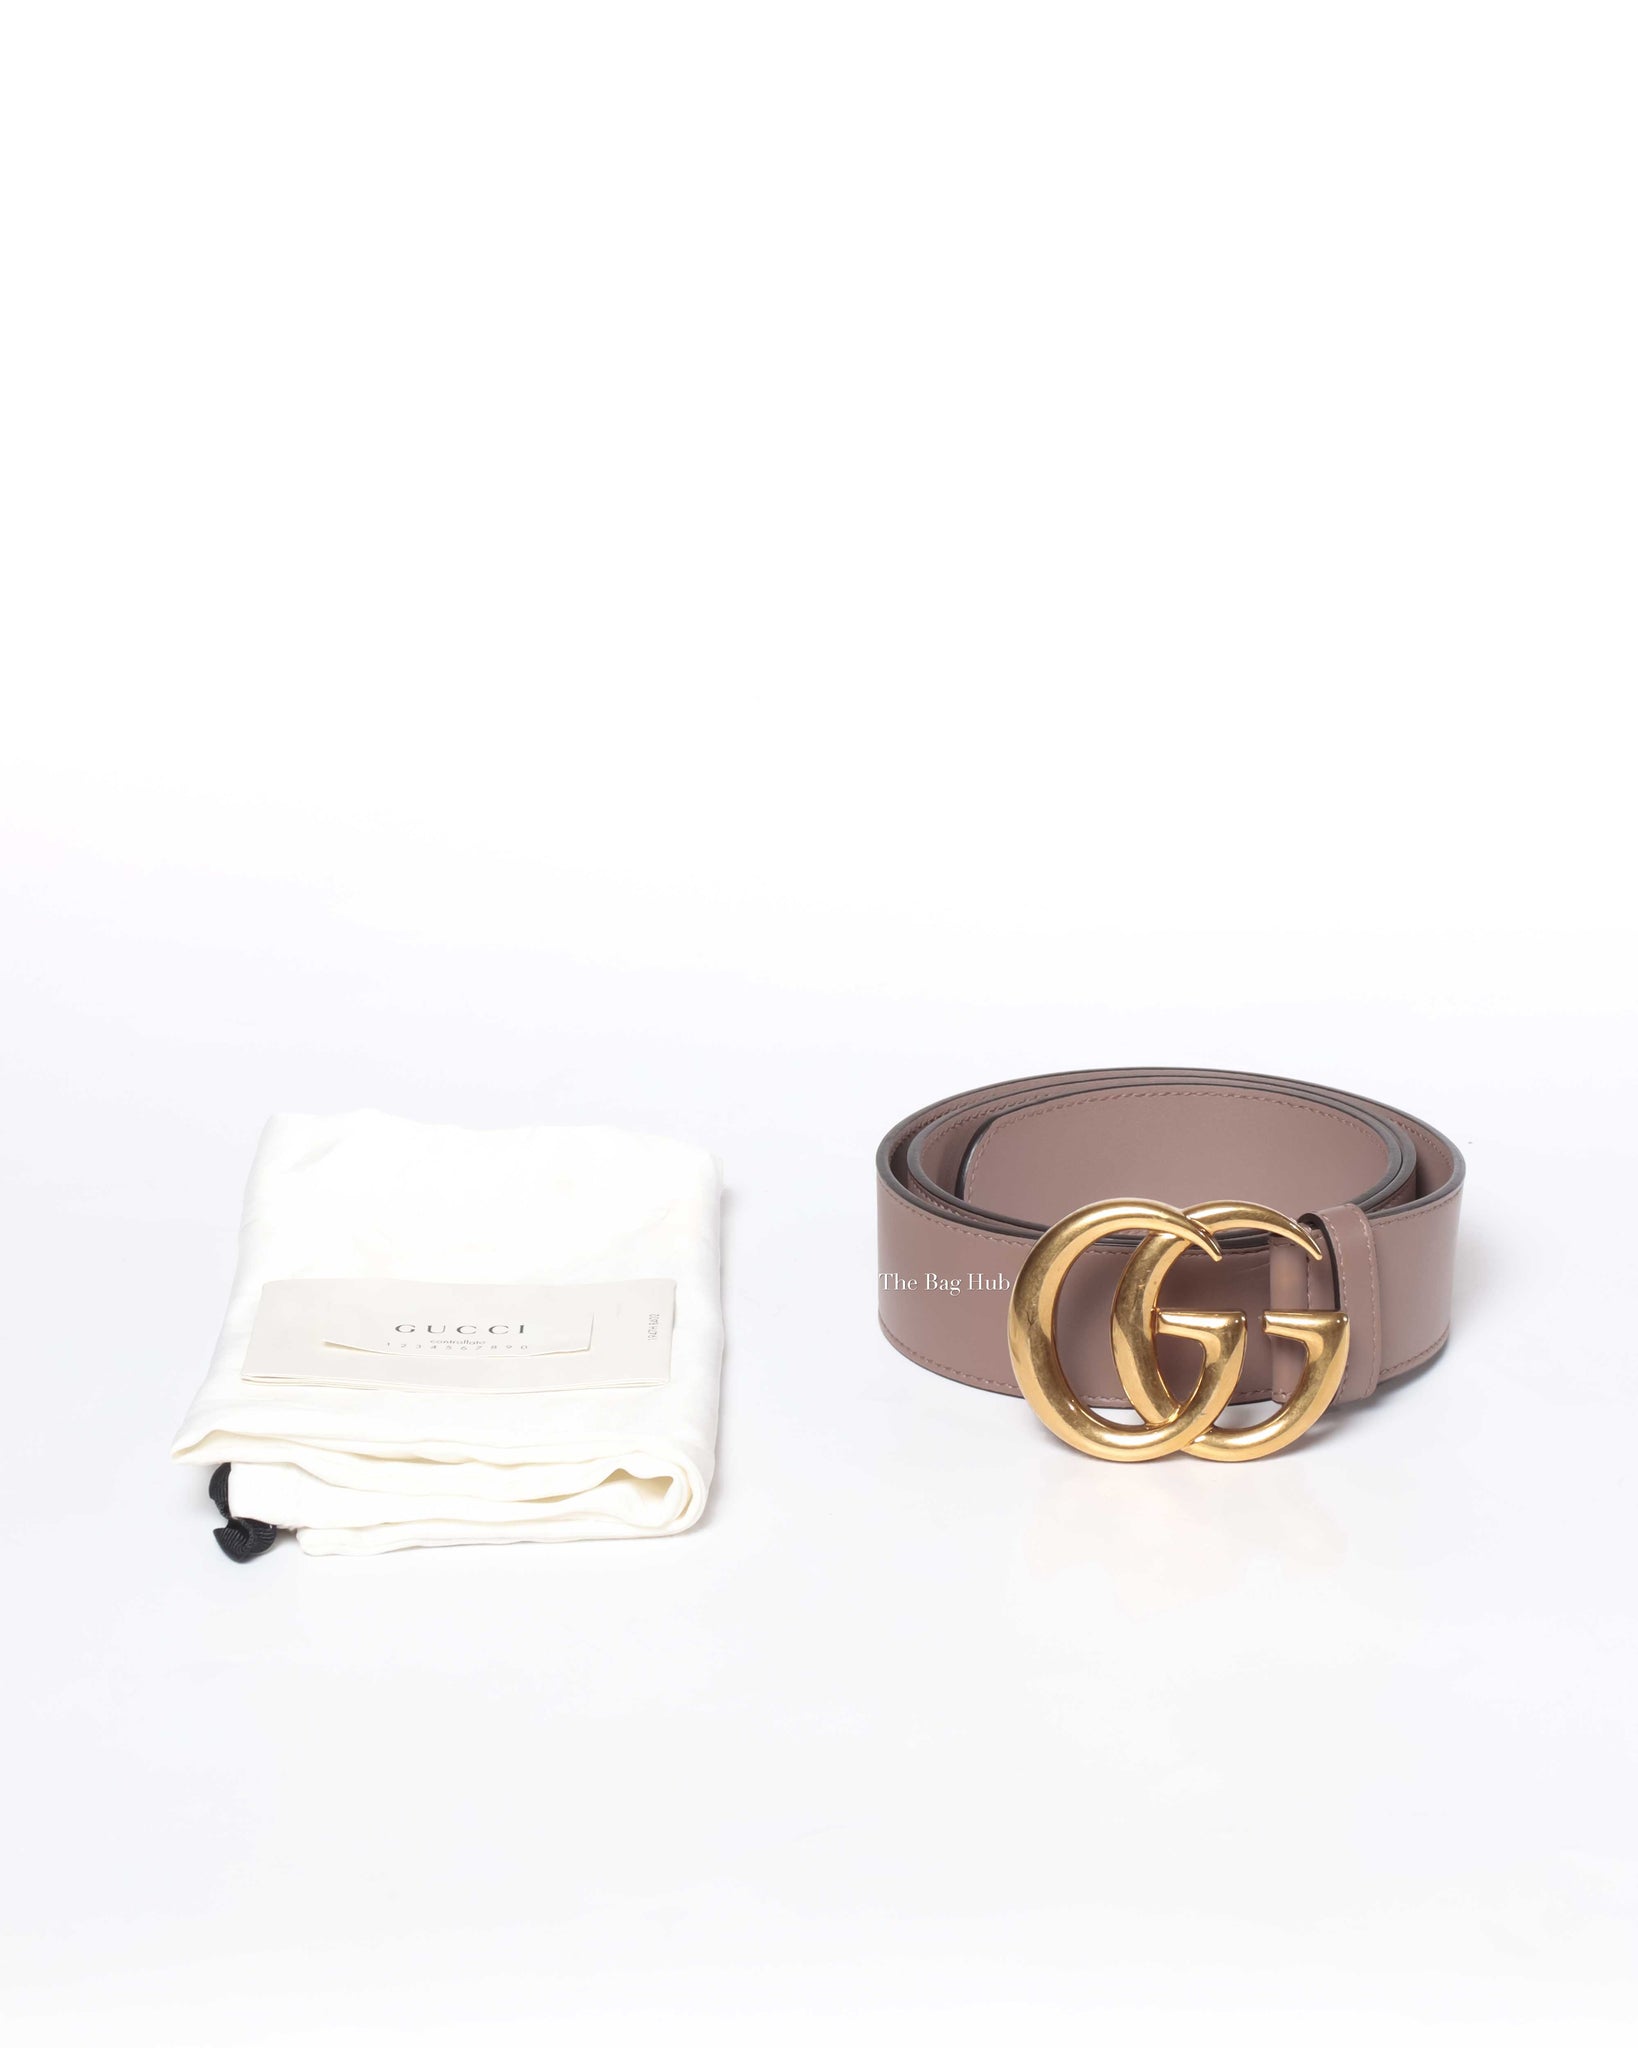 Gucci Beige GG Marmont Belt Size 85, Designer Brand